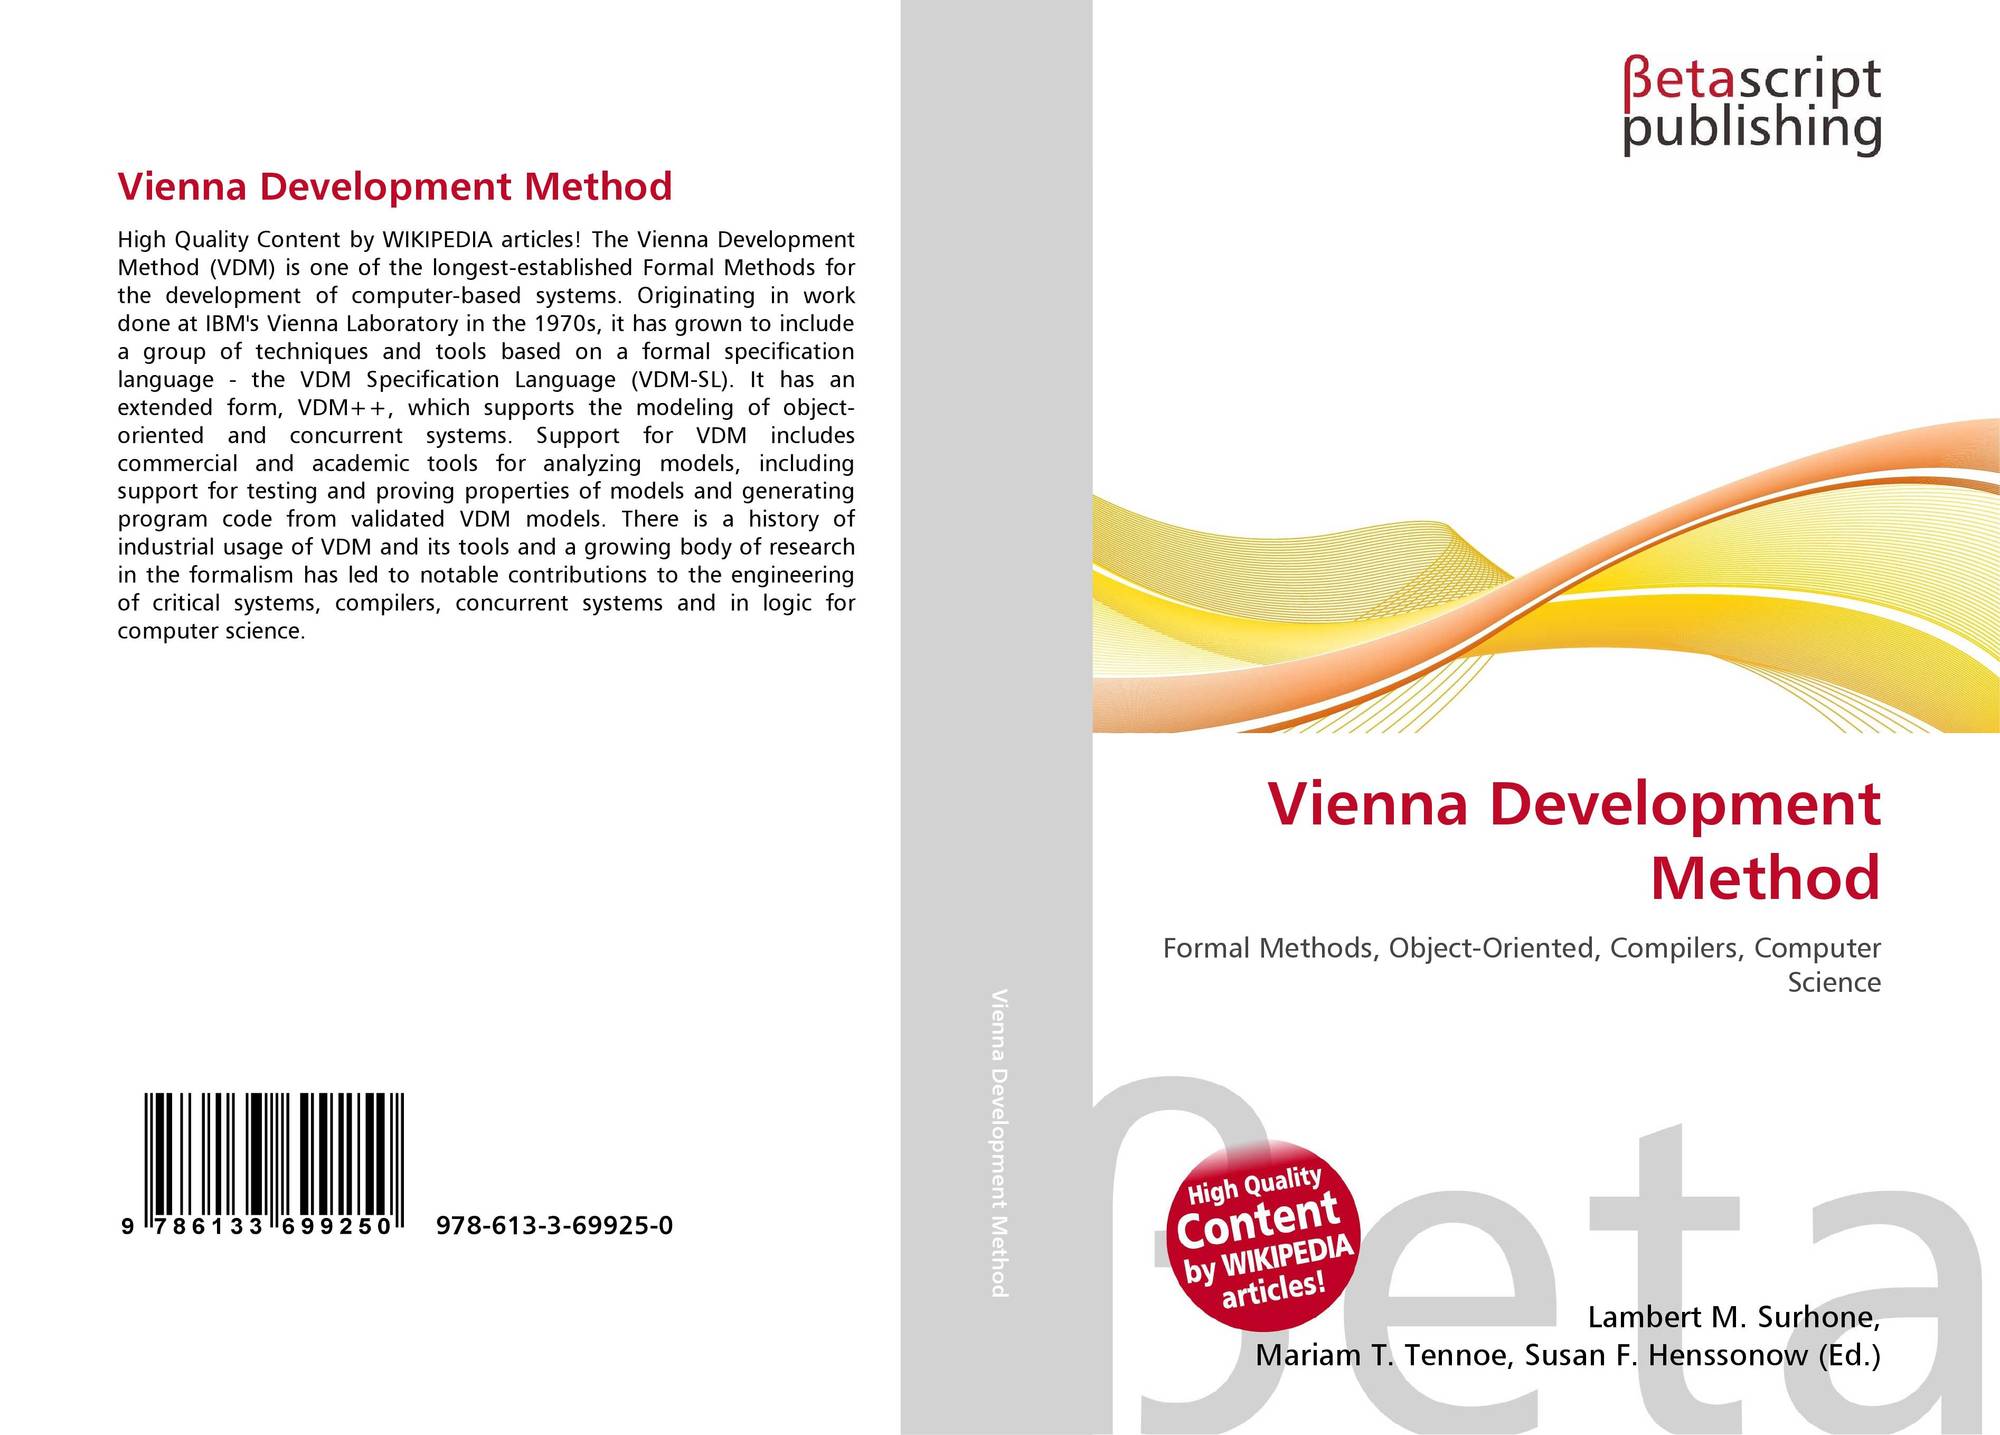 Vienna Development Method 978 613 3 69925 0 6133699256 - 